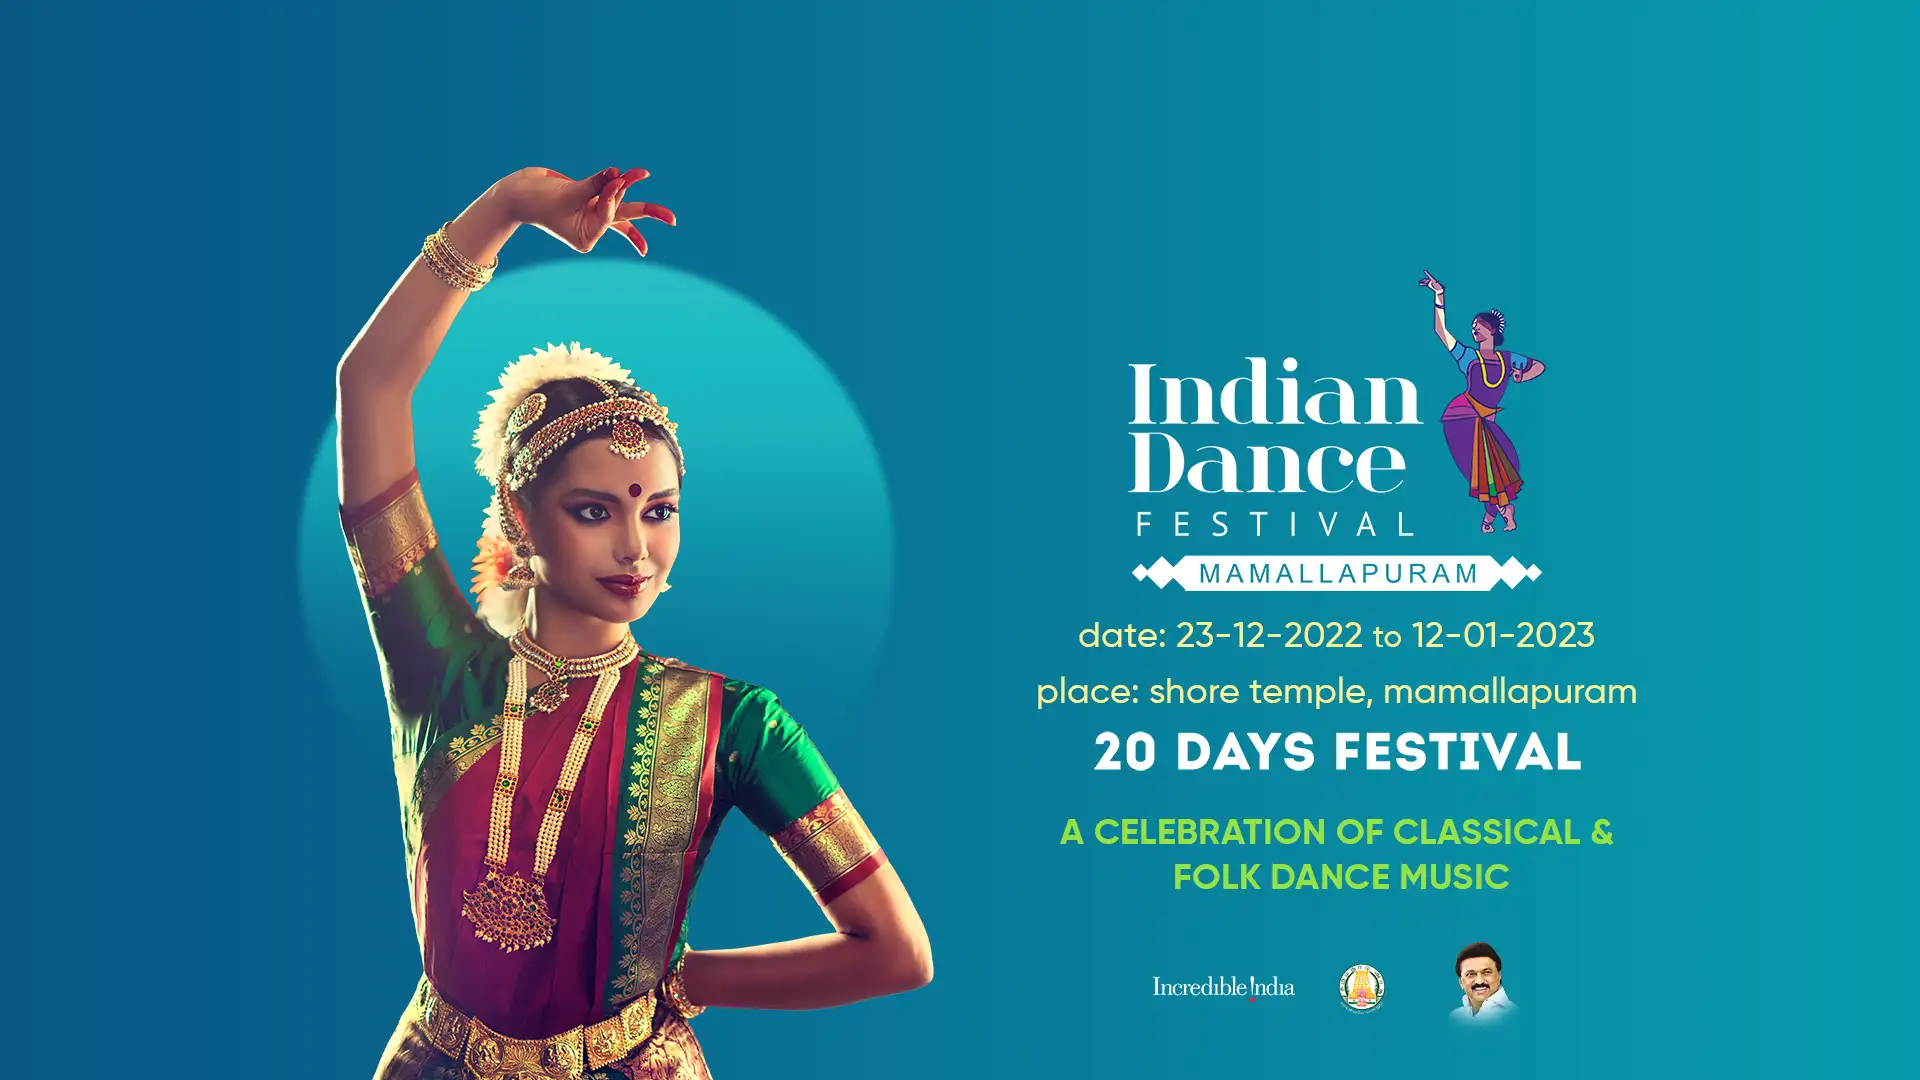 Festival de Mamallapuram: historia, programación y cómo asistir